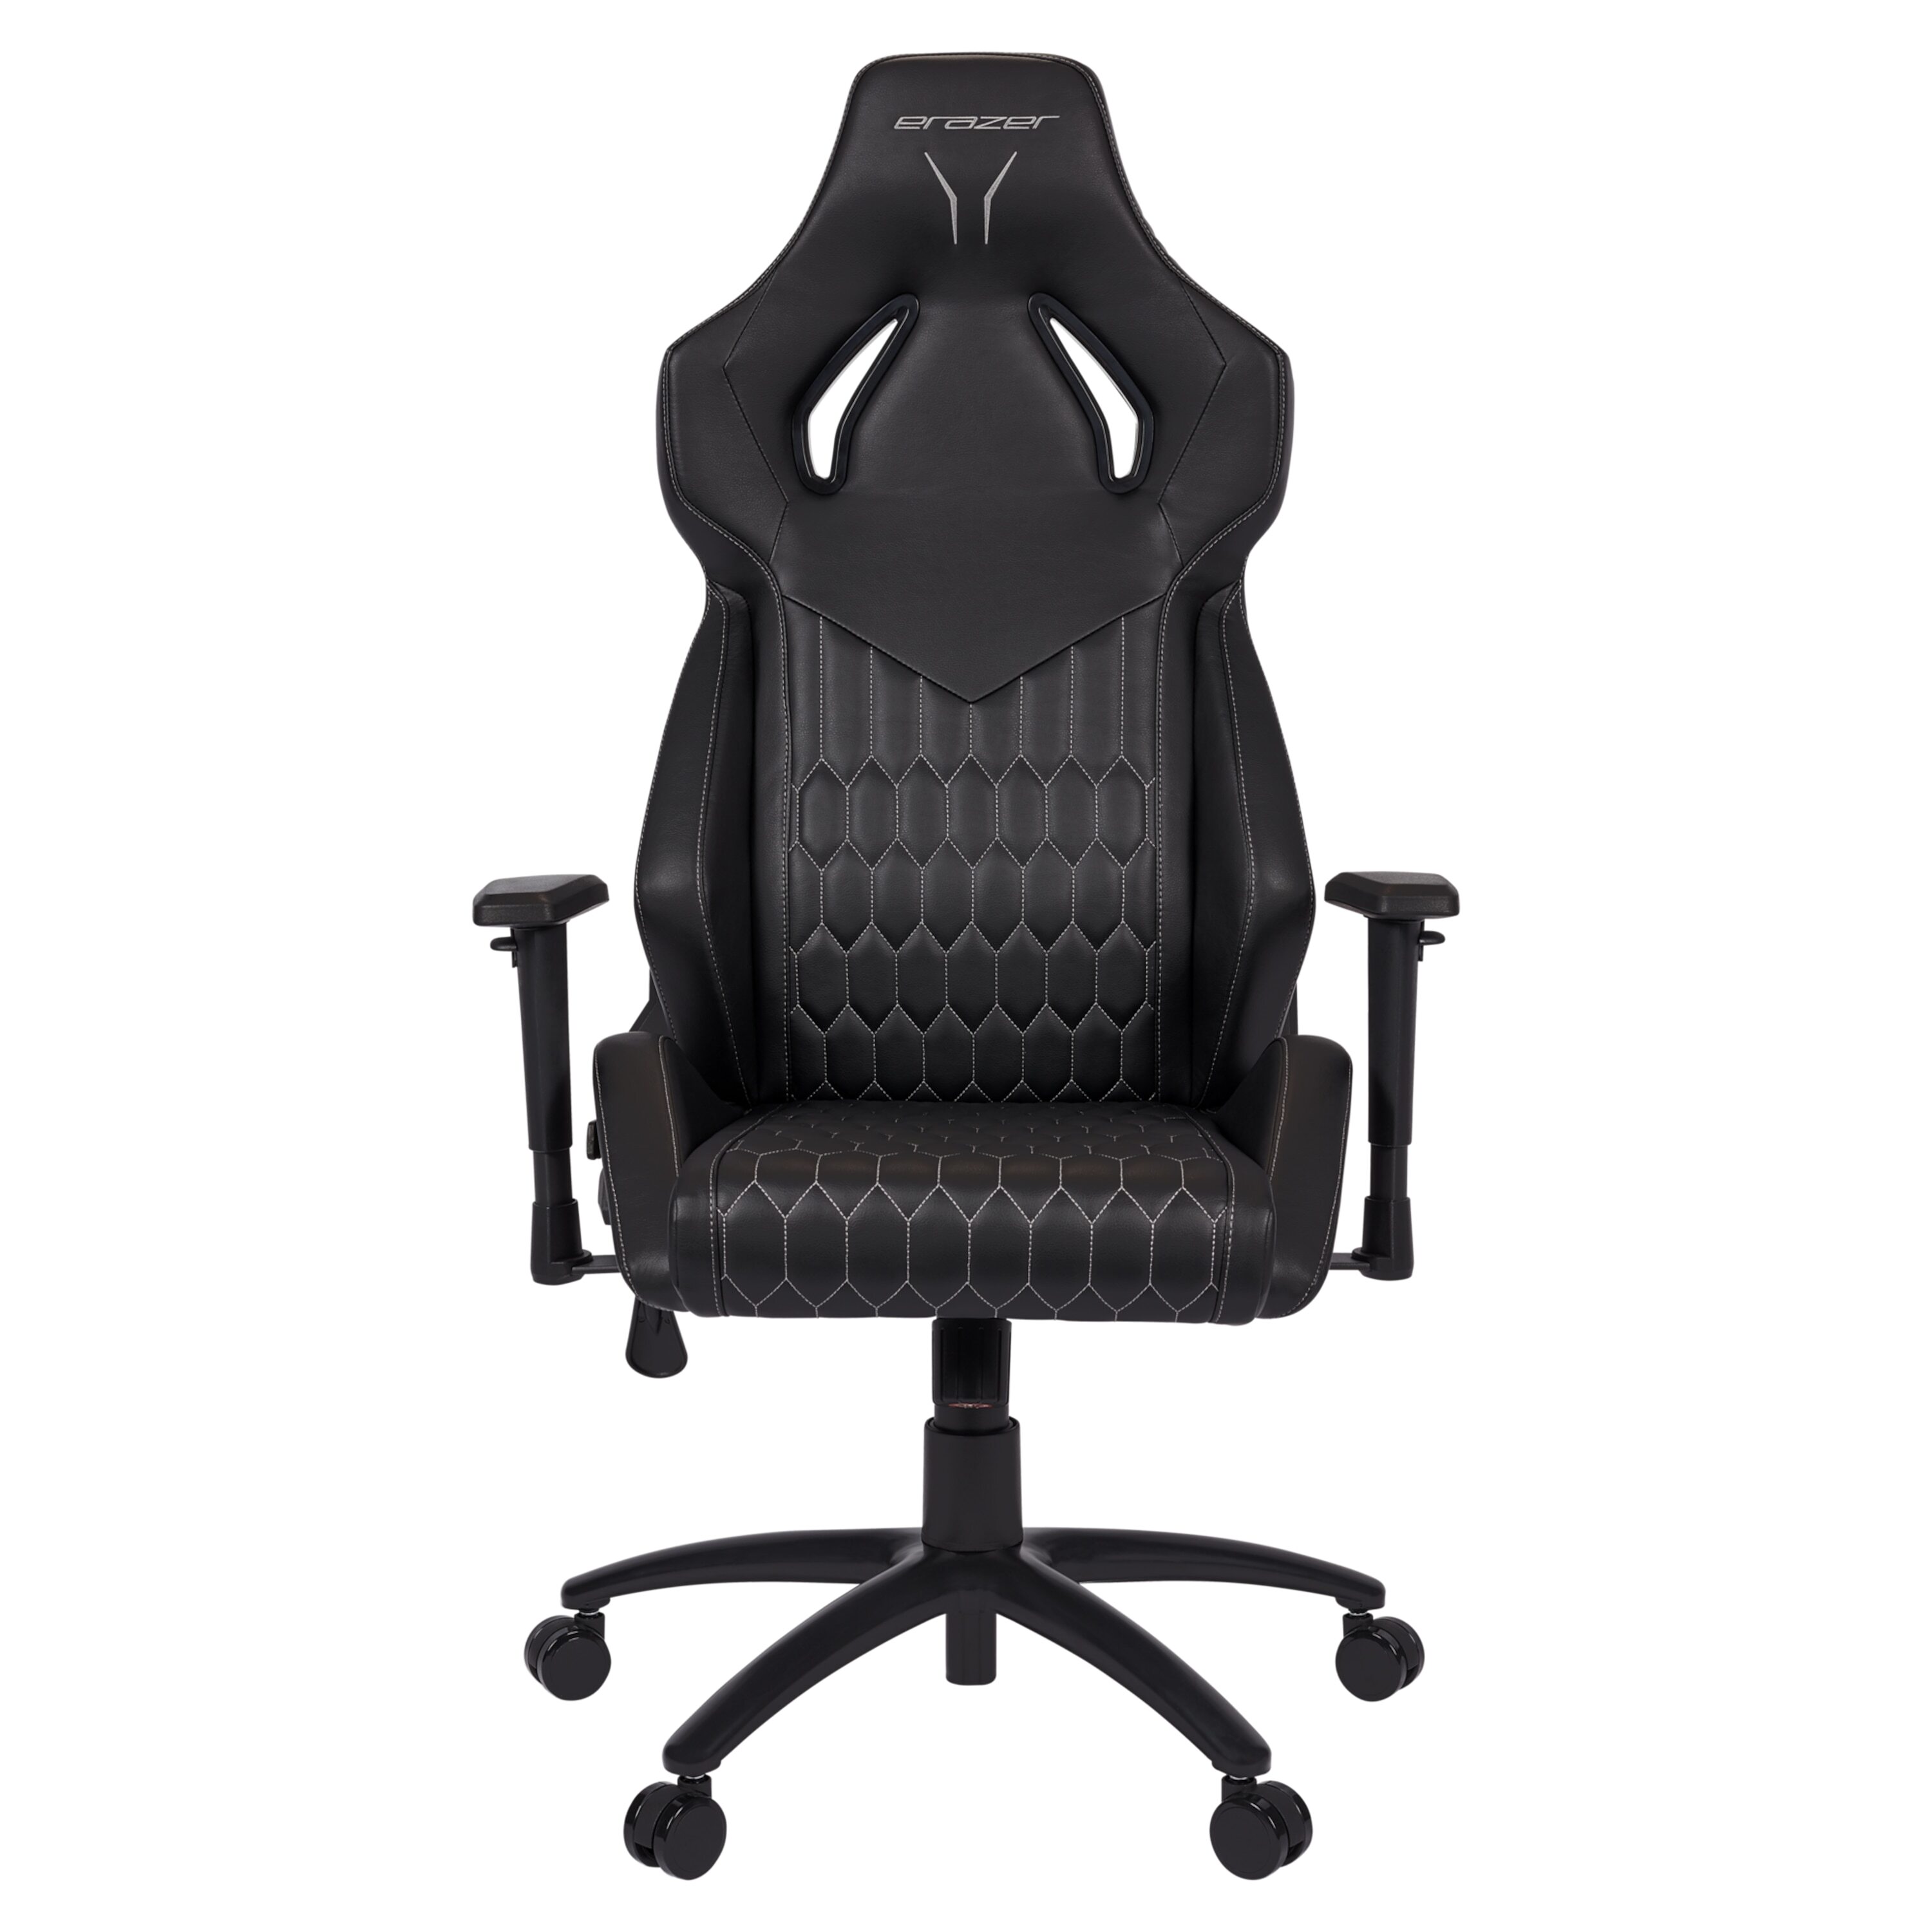 Medion ERAZER Druid P10 Gaming stoel | hoog zitcomfort | sportieve look | hoogwaardige materialen & ergonomisch ondersteunde zitpositie